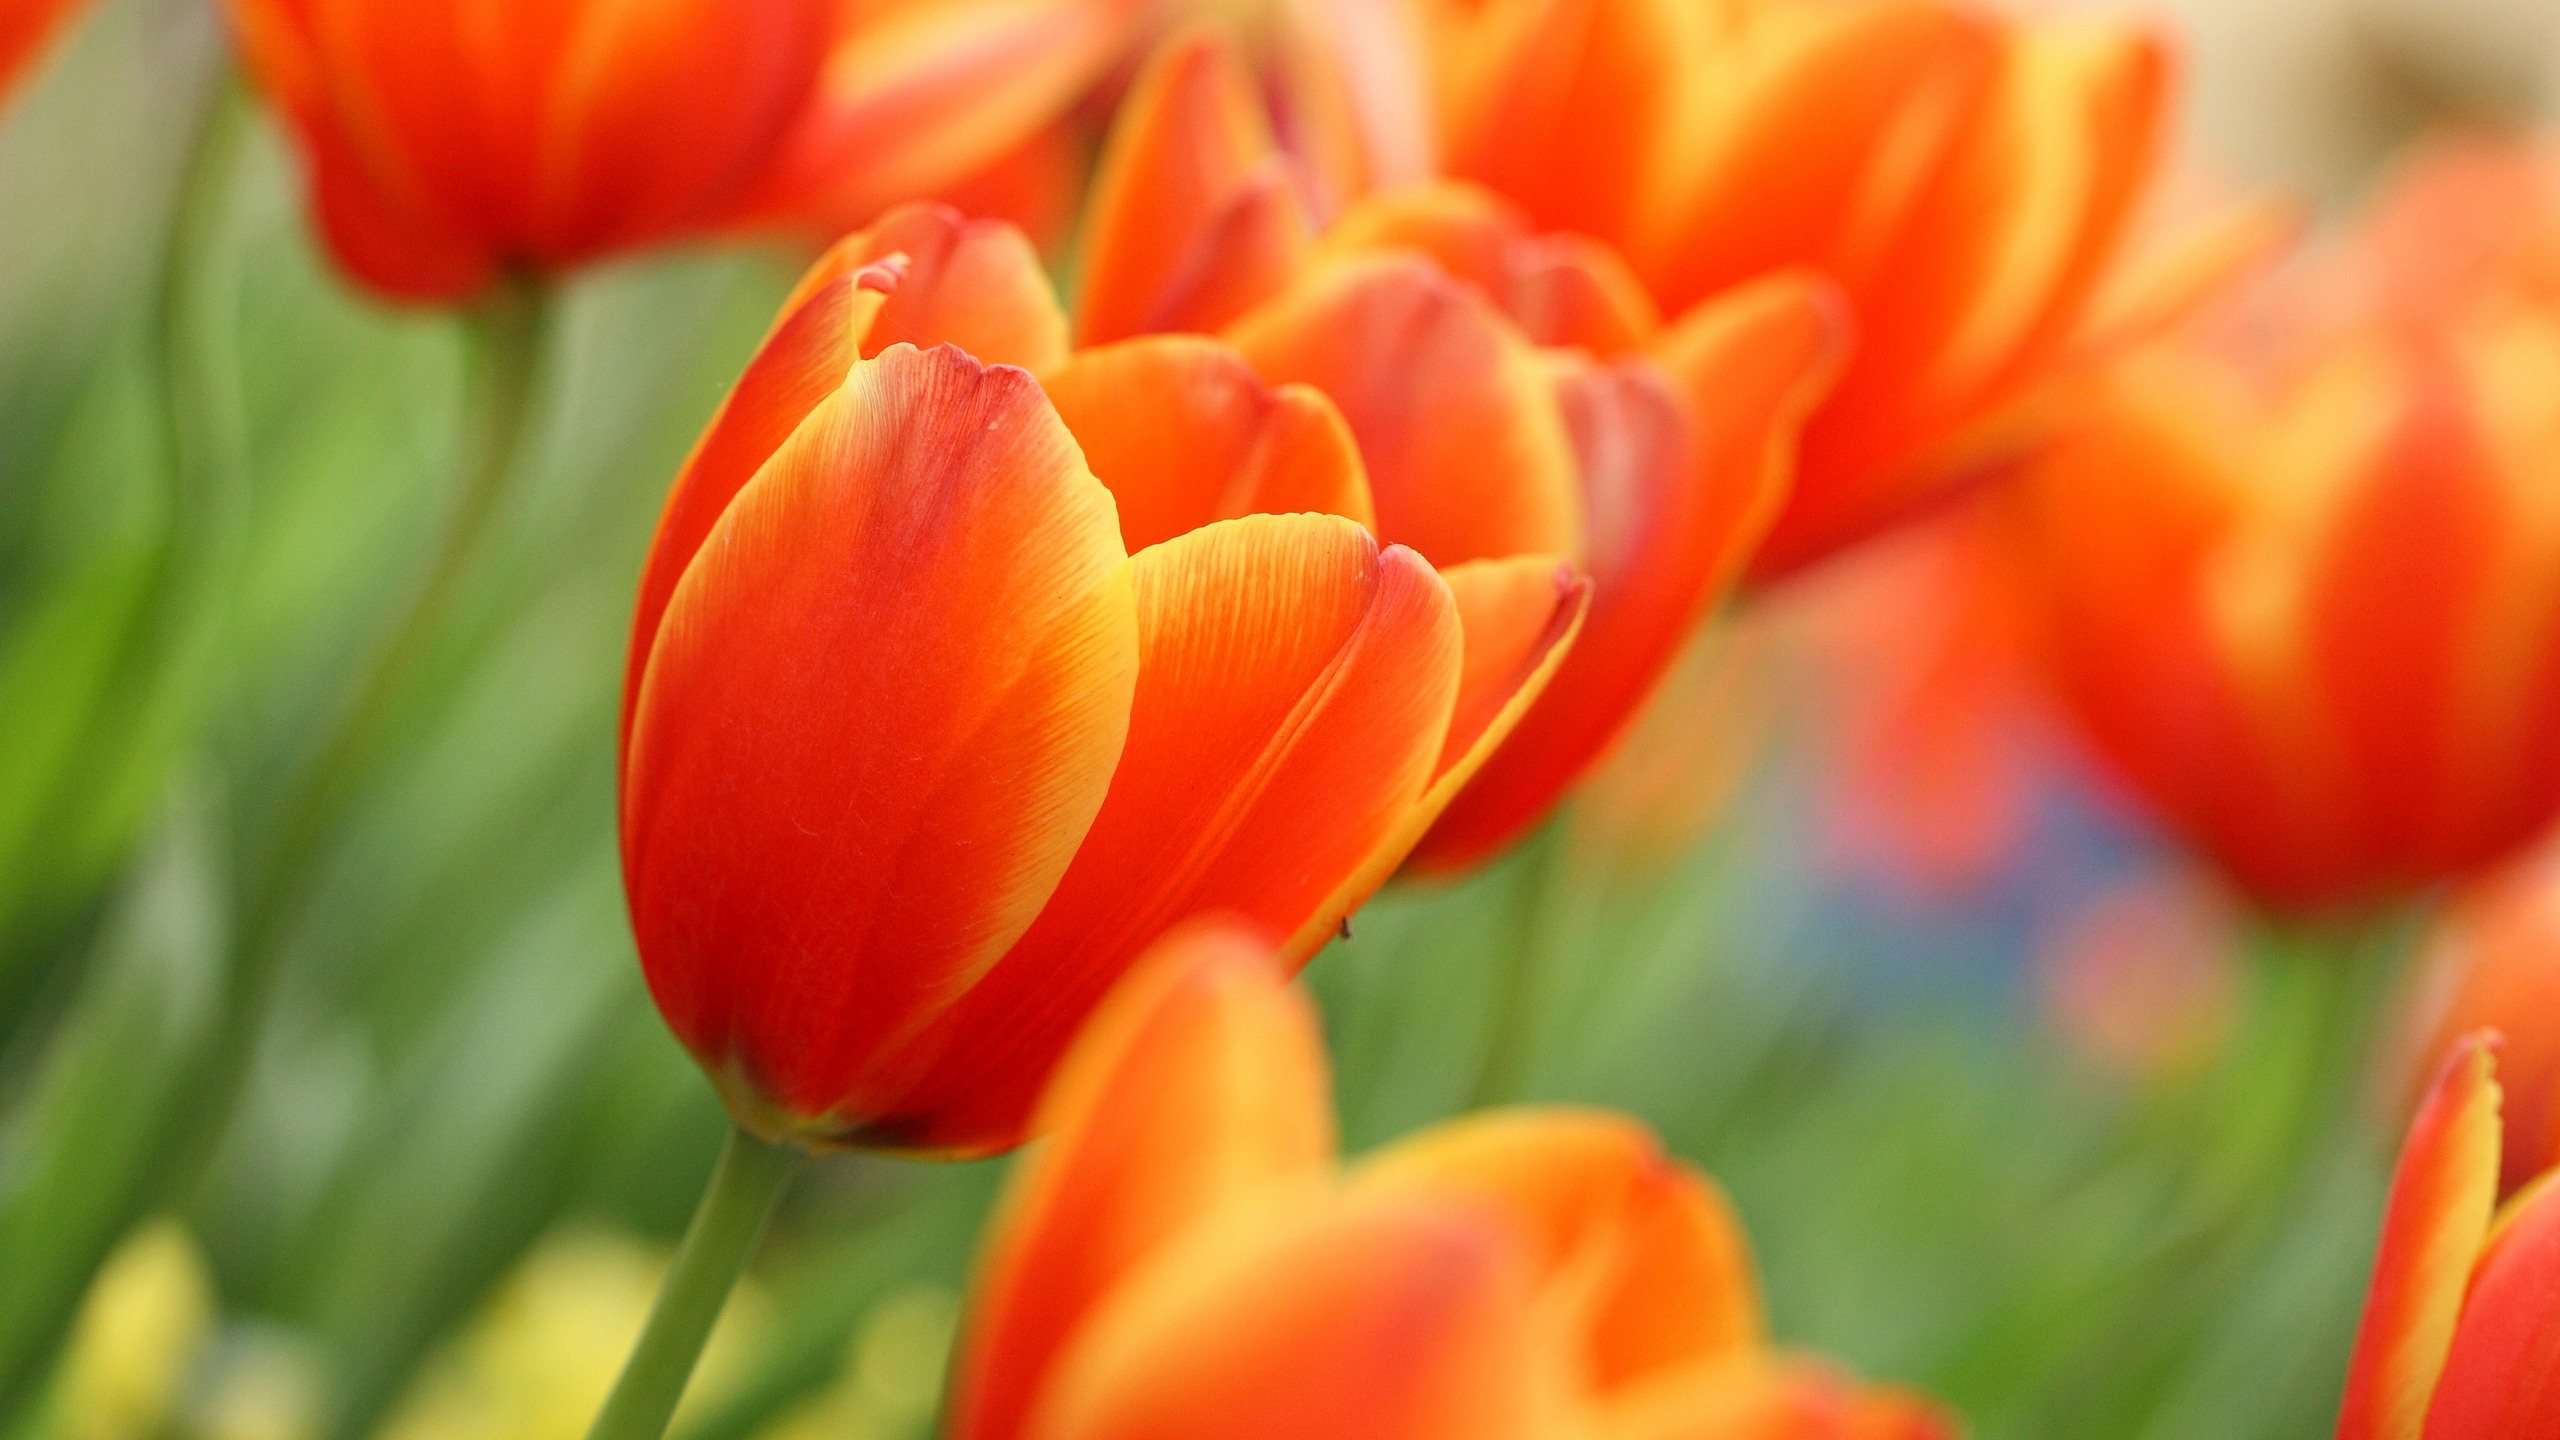 Top Wallpapers 2016: Tulips Orange Wallpapers, Good Tulips Orange ...